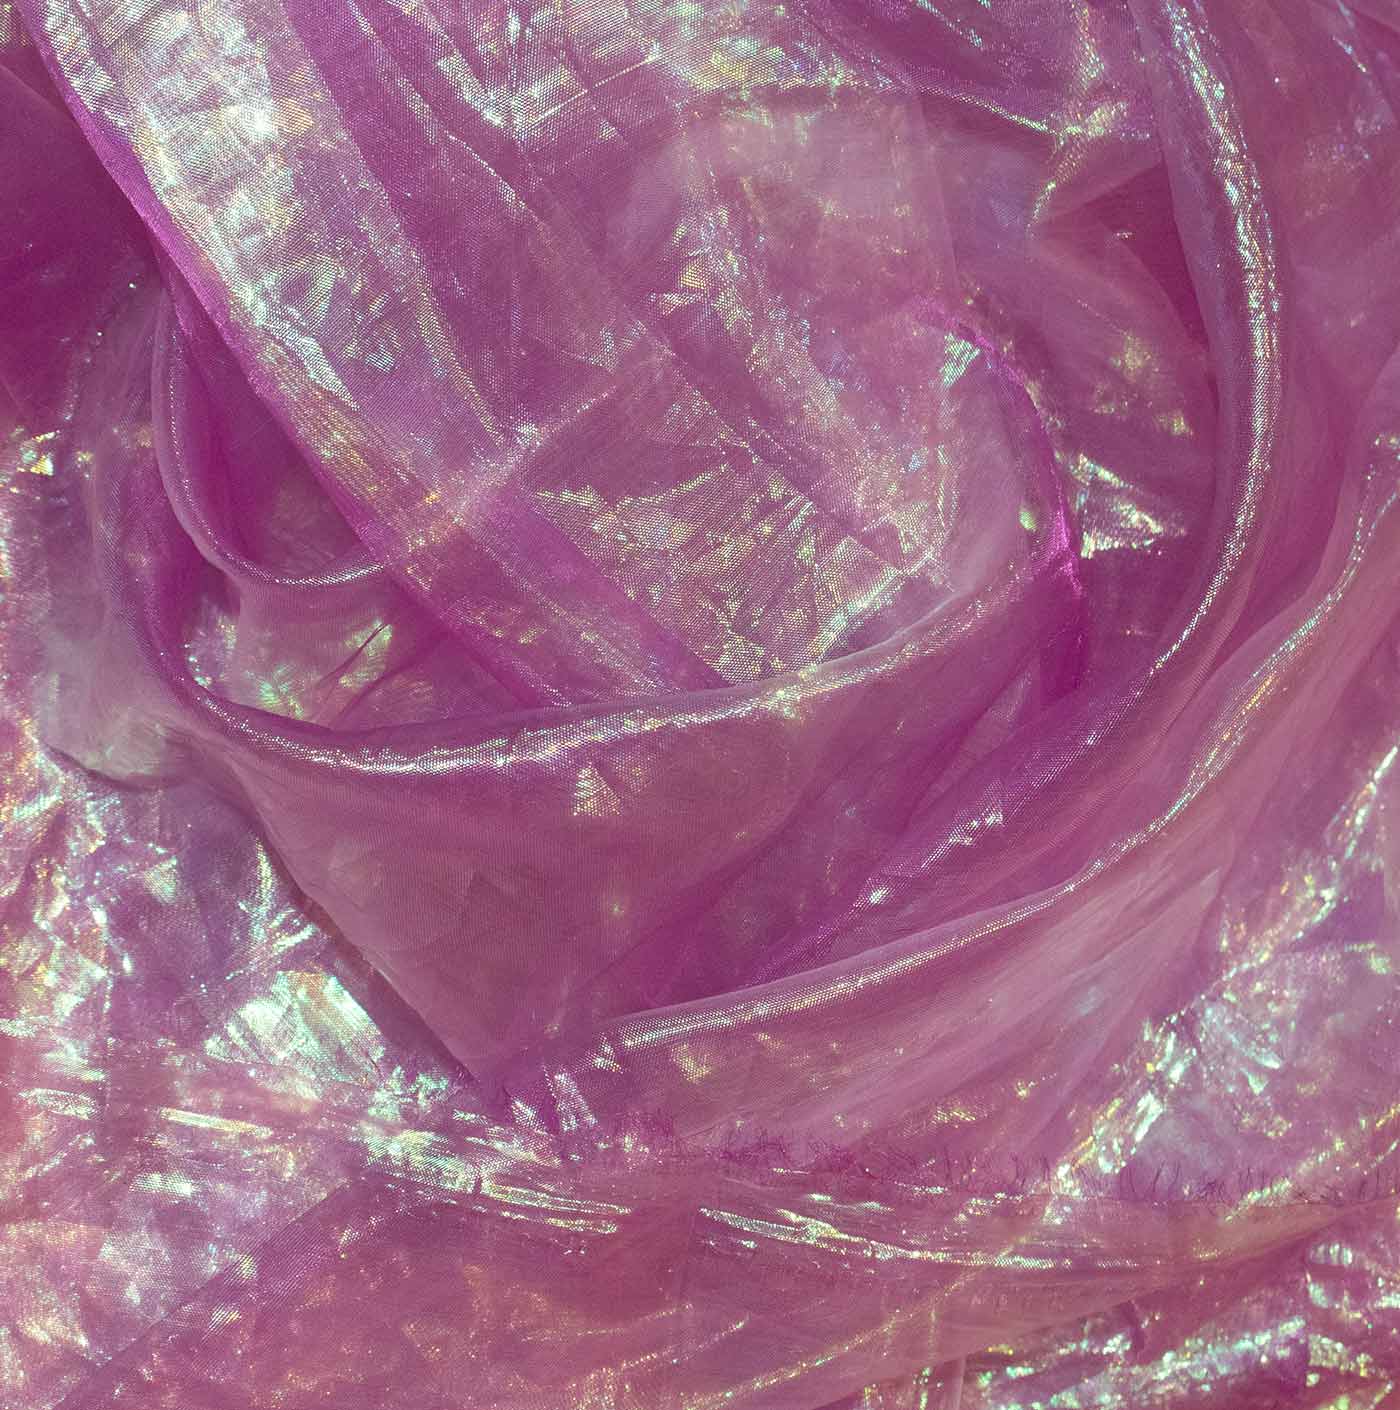 Purple Iridescent Cationic Chiffon Fabric